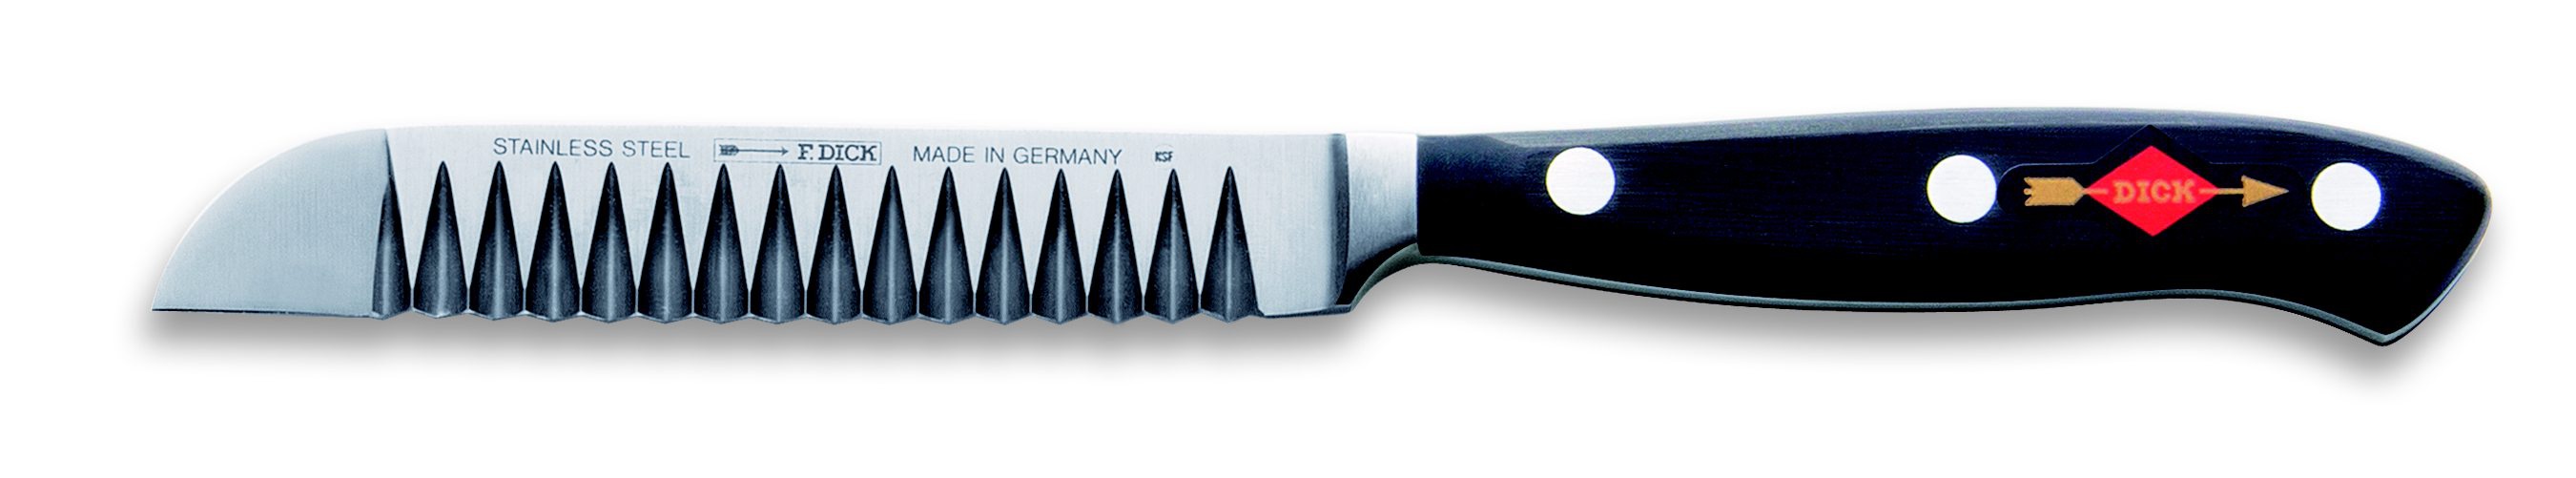 Dekorativní nůž Premier Plus kovaný v délce 10 cm